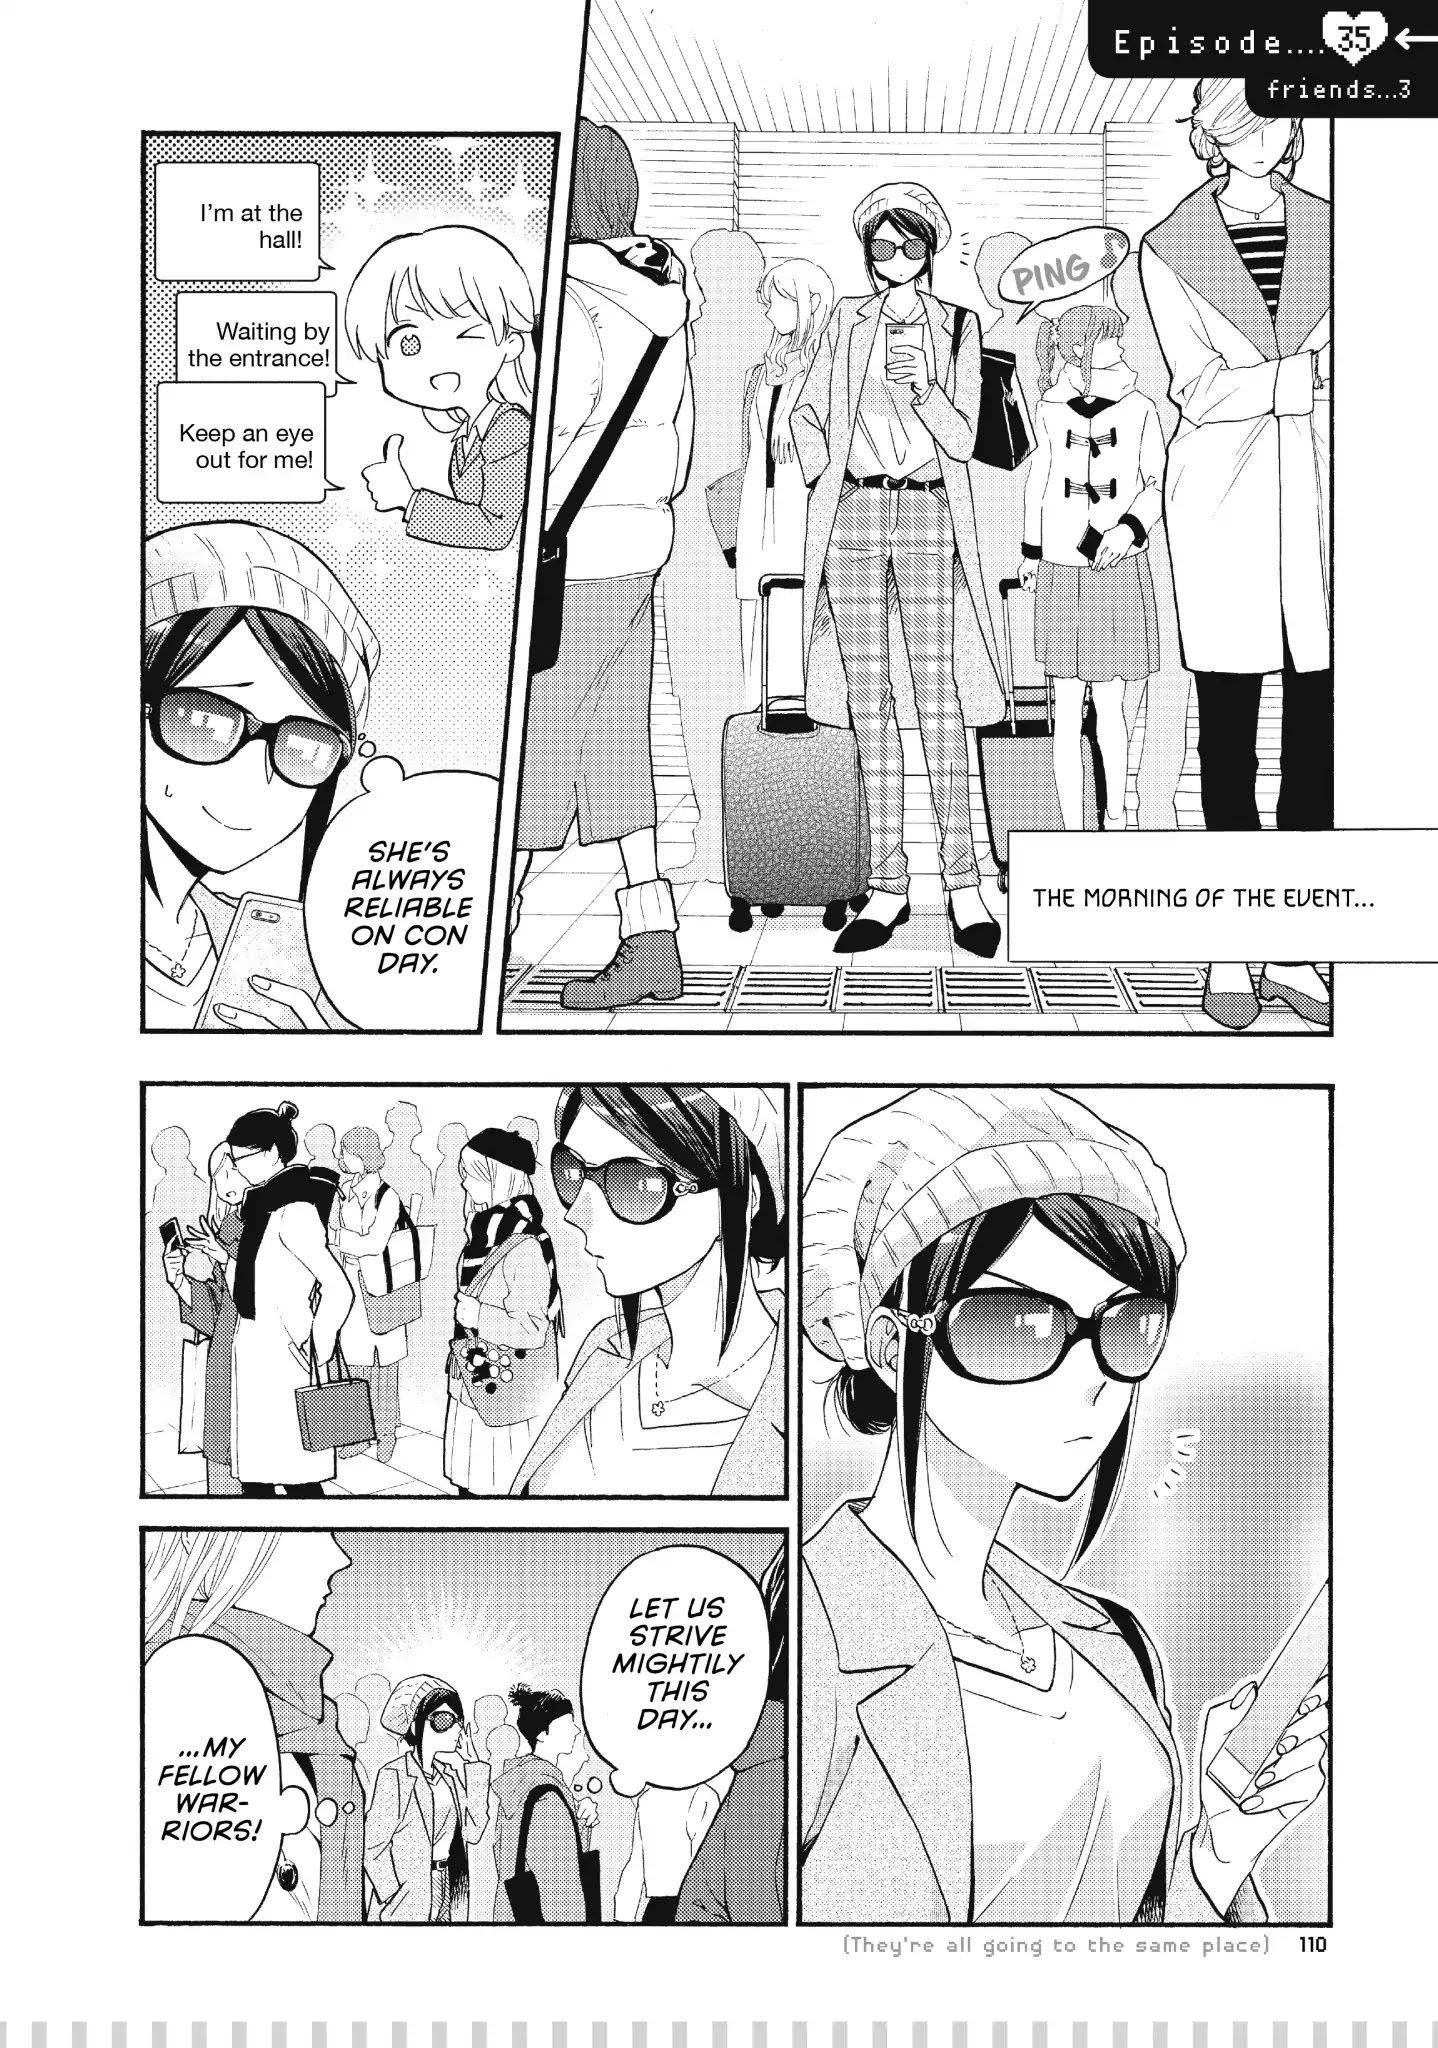 Wotaku ni Koi wa Muzukashii Manga Chapter 65.2